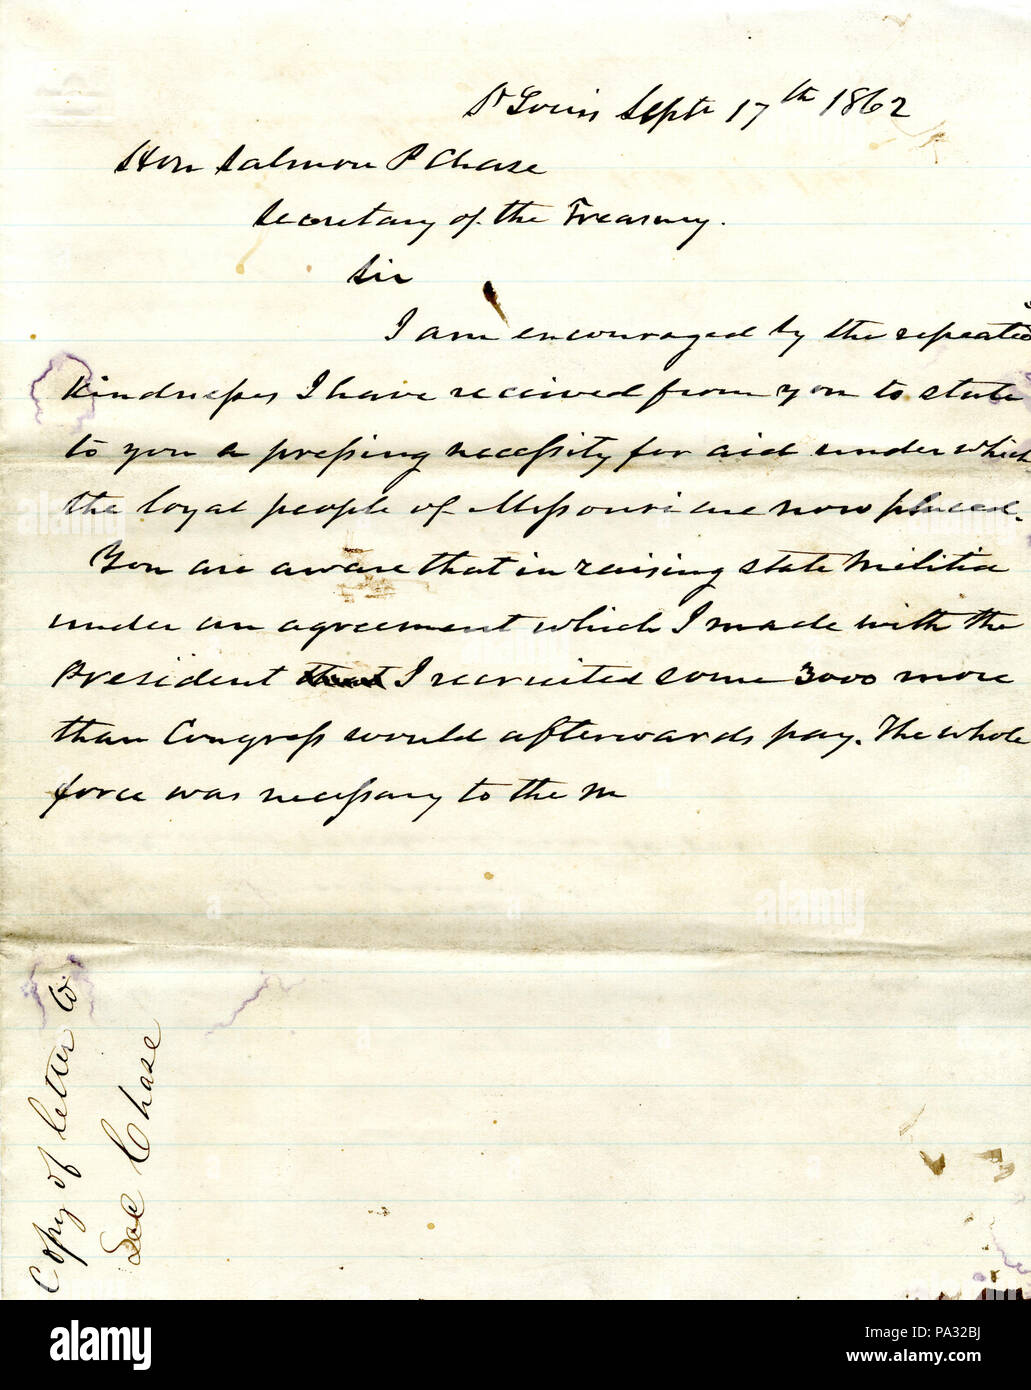 590 Projet de lettre de Hamilton R. Gamble, Saint Louis, à l'honorable Salmon P. Chase, secrétaire du Trésor, le 17 septembre 1862 Banque D'Images